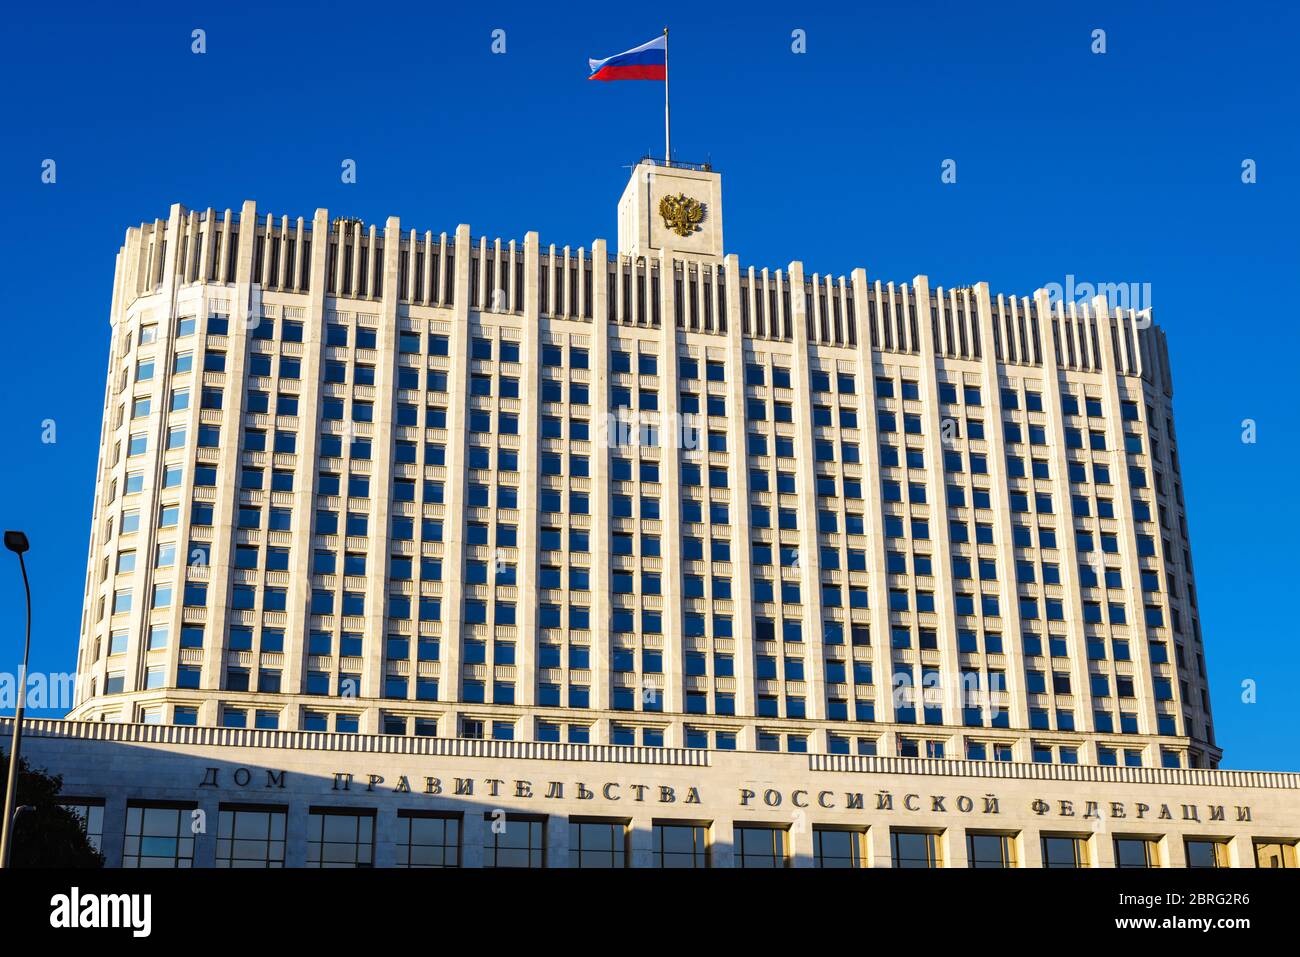 Haus der Regierung der Russischen Föderation (es ist auf der Fassade geschrieben), Moskau, Russland. Vorderansicht des Regierungsgebäudes (Weißes Haus) mit Flagge Stockfoto